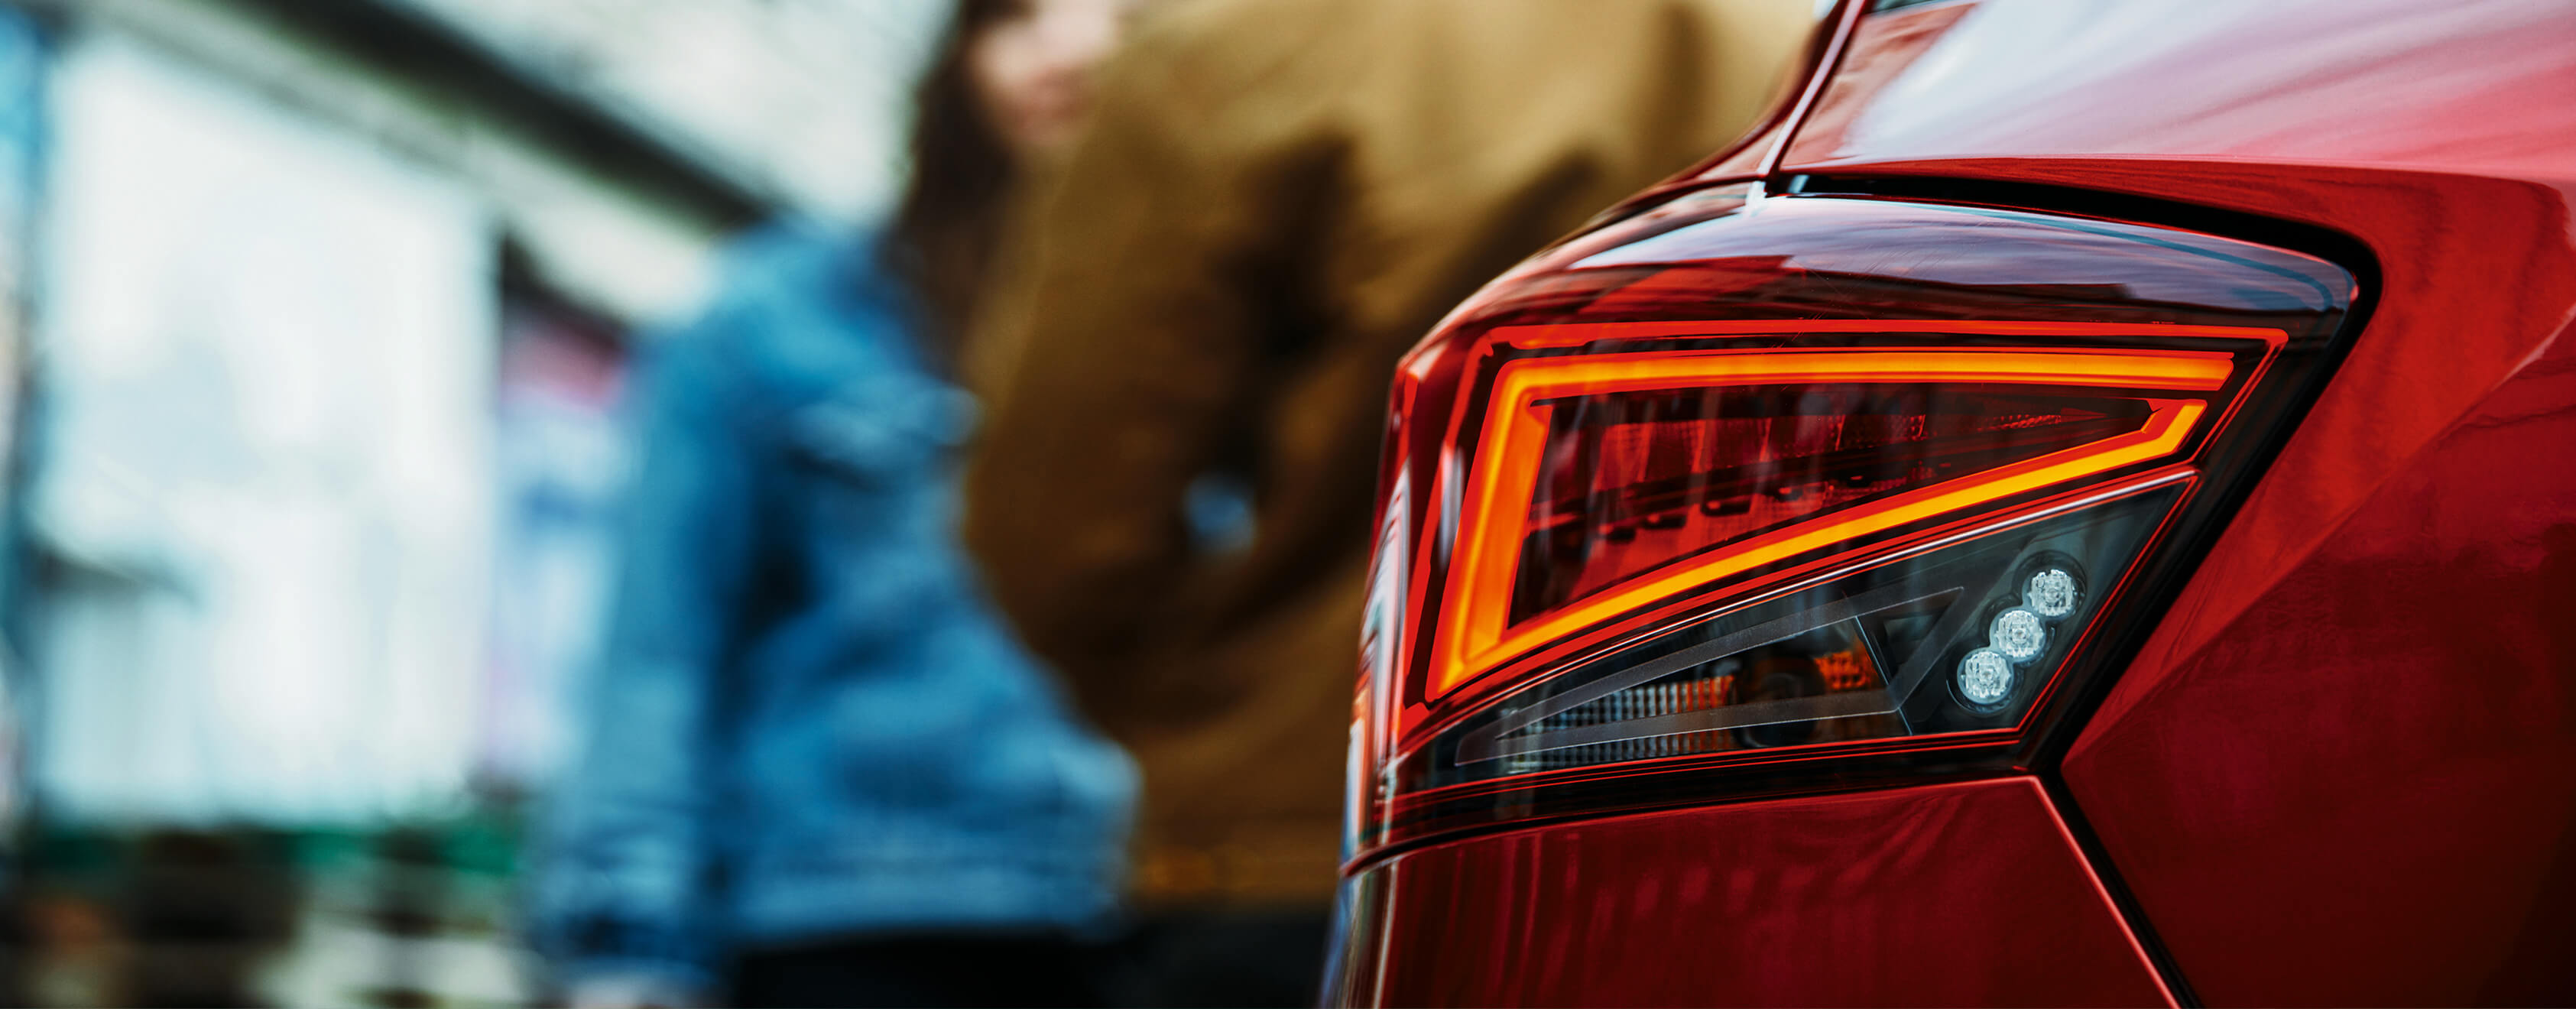 SEAT servizi auto nuove estensione garanzia manutenzione – vista posteriore luci posteriori con persone sullo sfondo fuori fuoco